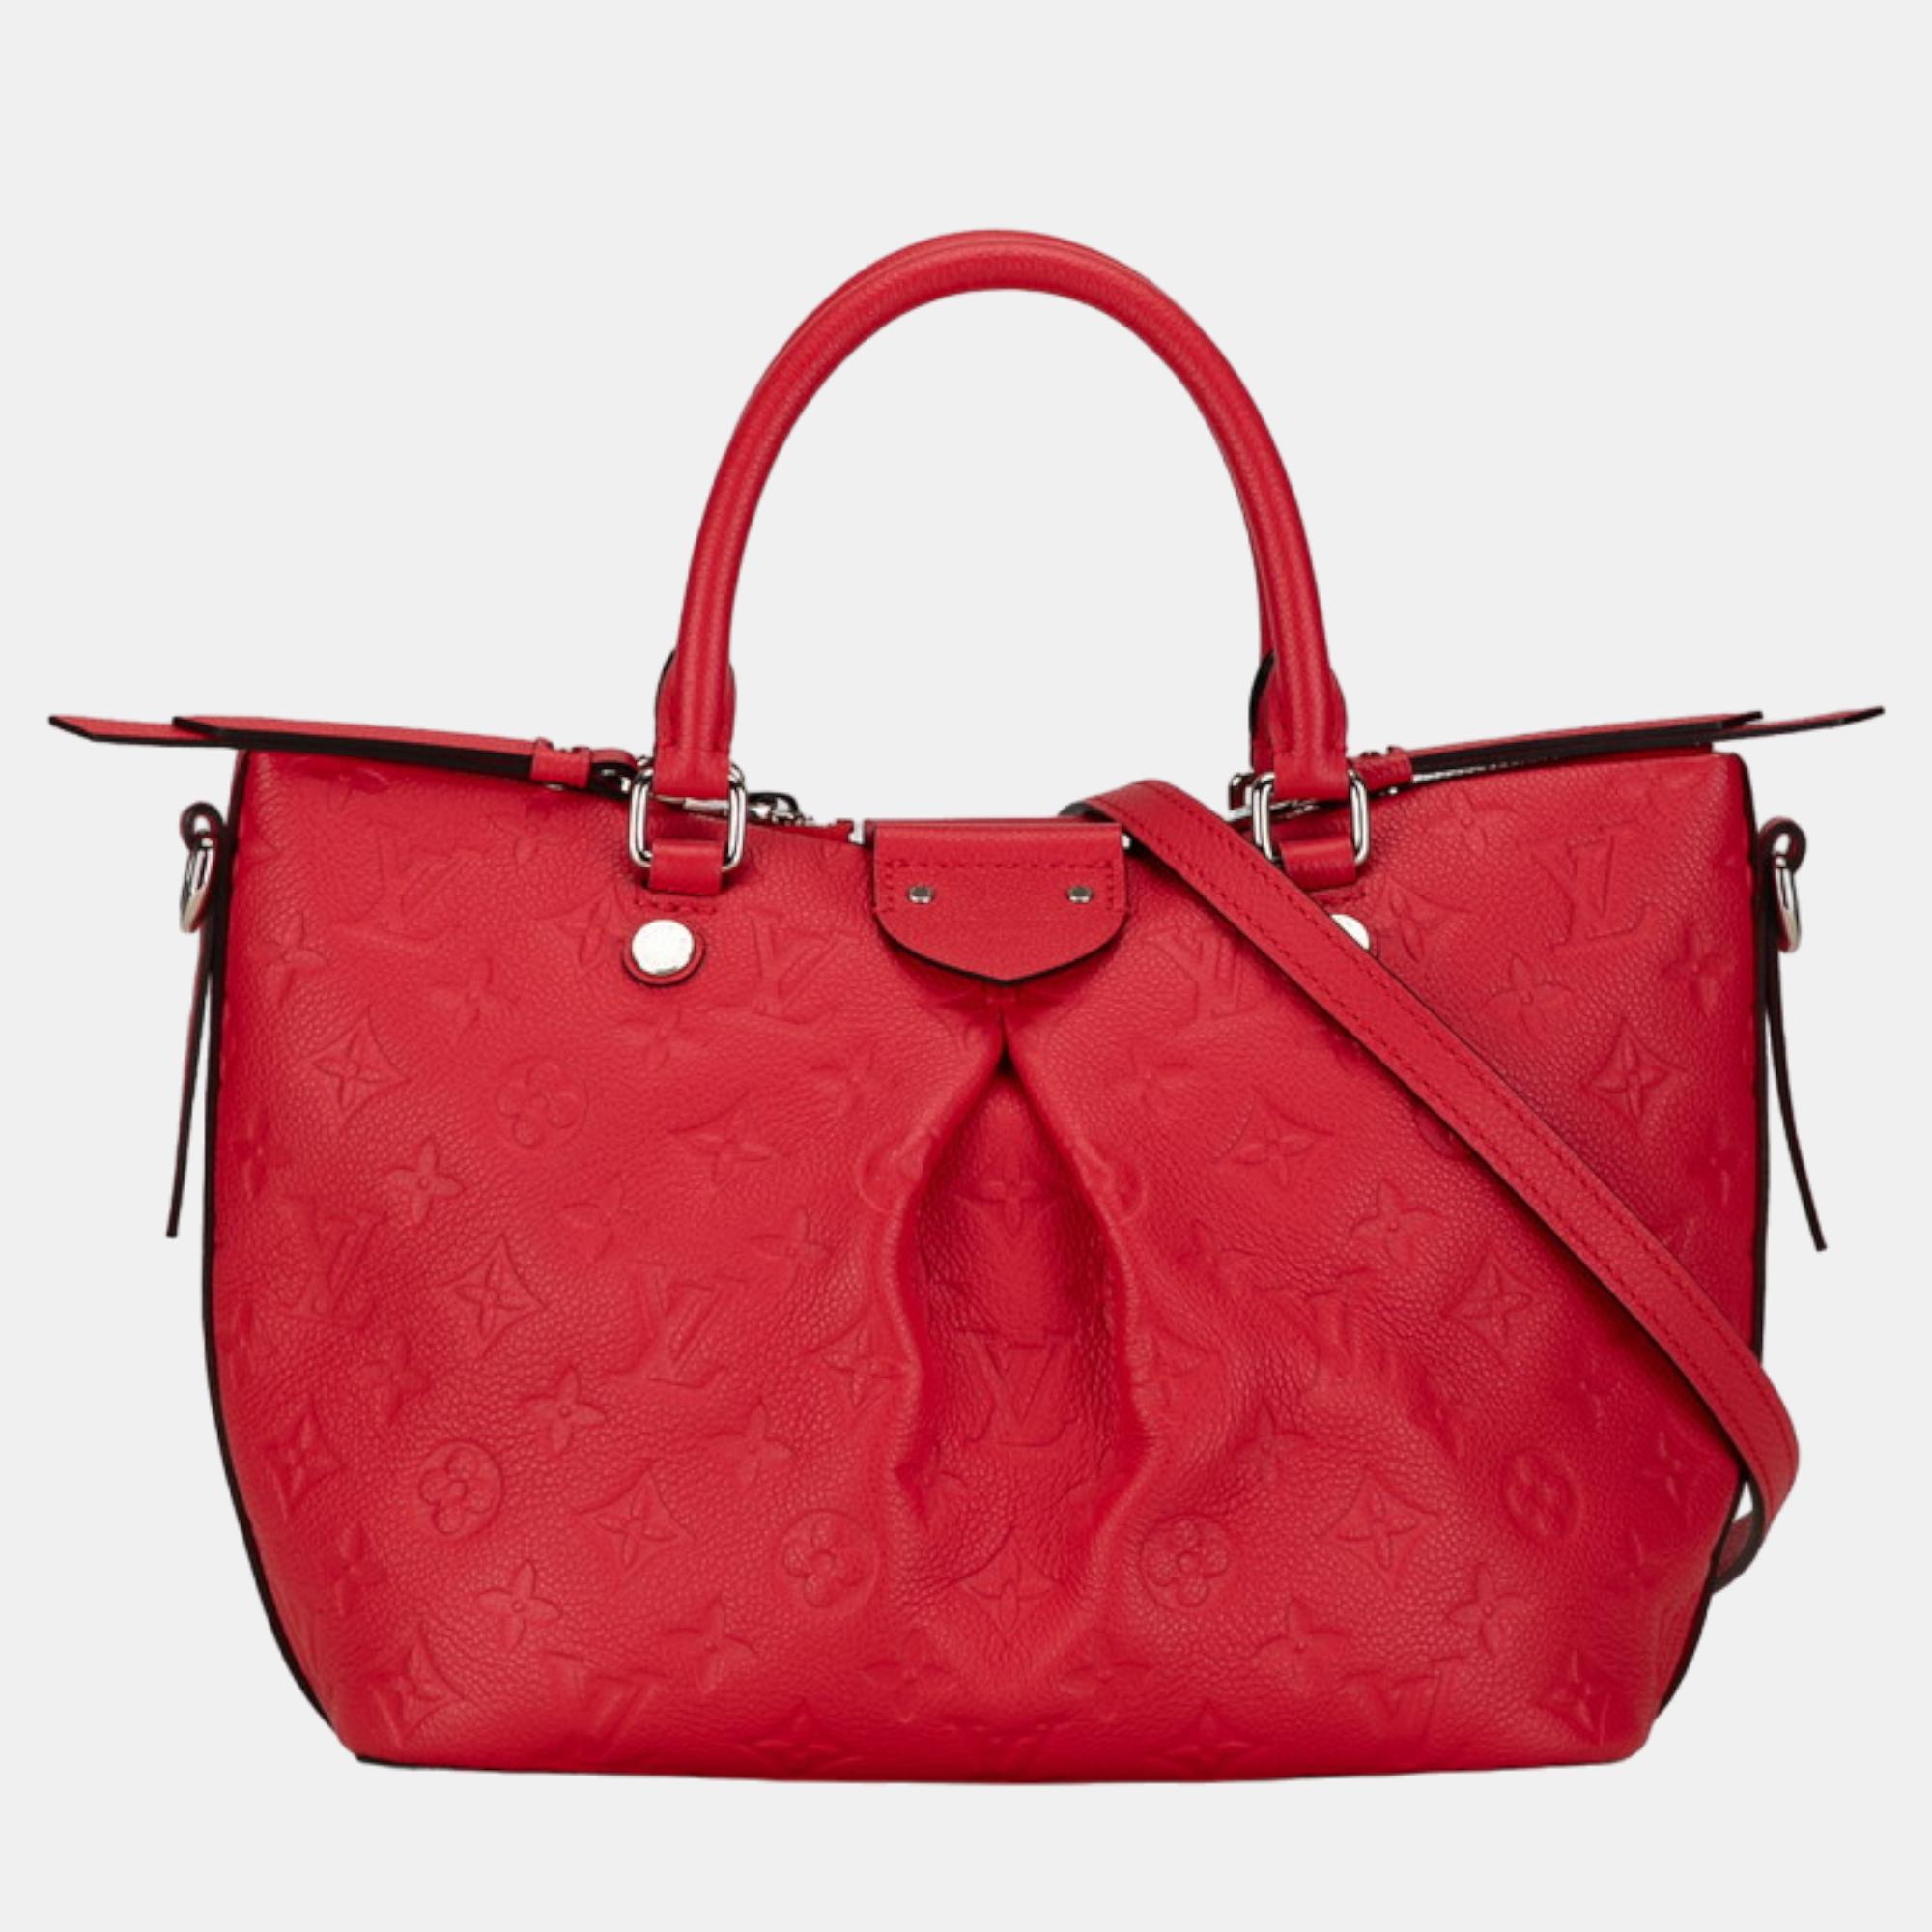 Louis vuitton red leather mazarine pm handbag